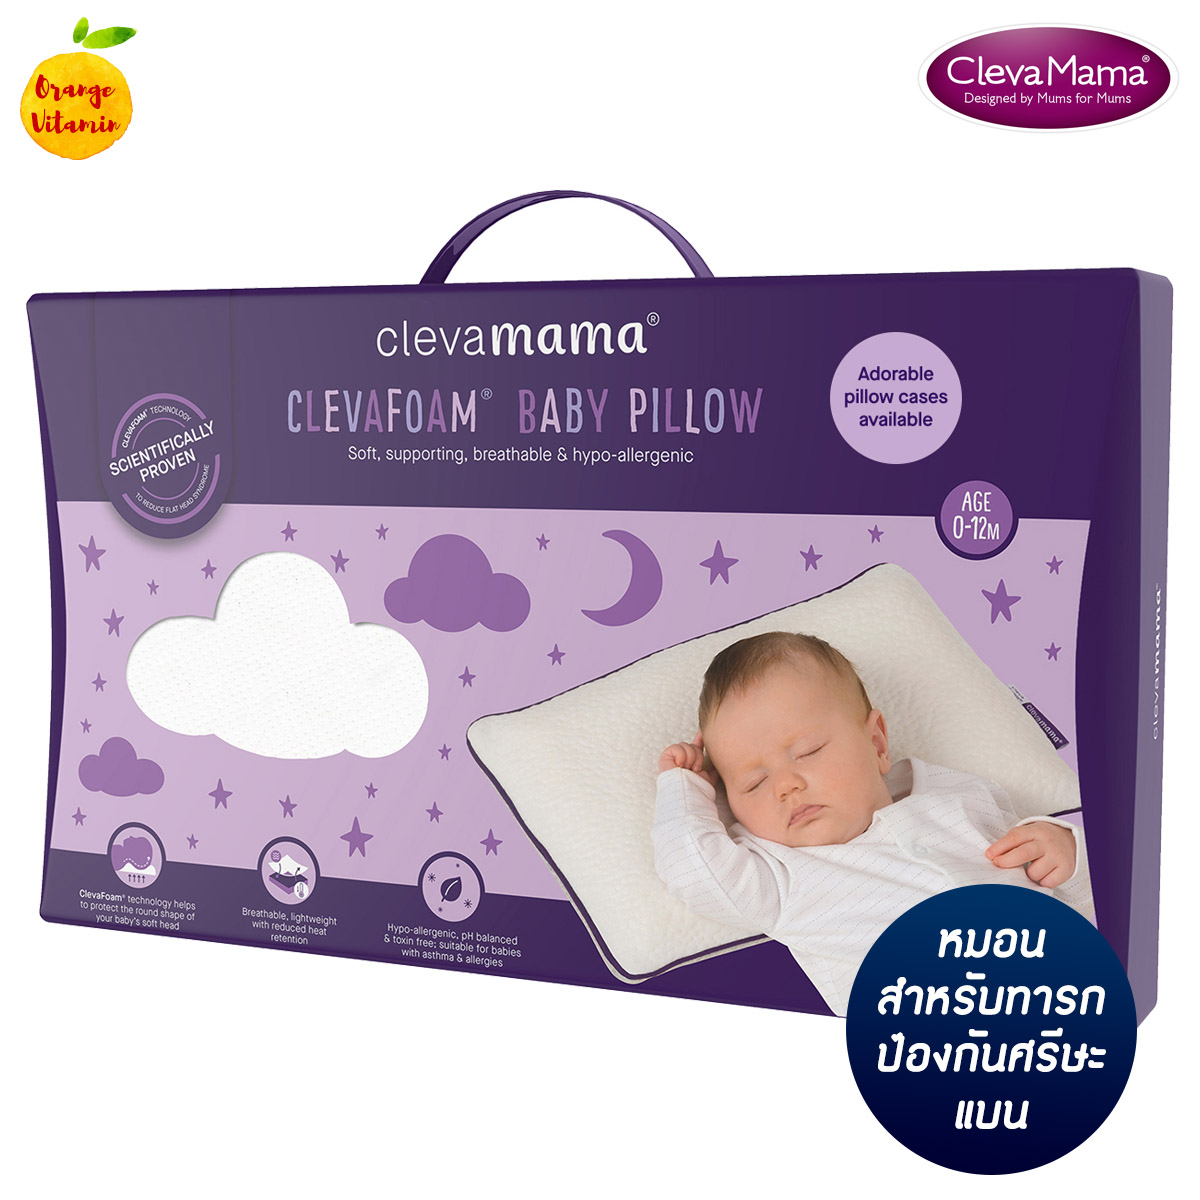 ราคา Clevamama หมอนป้องกันศรีษะแบน หมอนหัวทุย หมอนเด็ก รุ่น Baby ด้วยเทคโนโลยี ClevaFoam